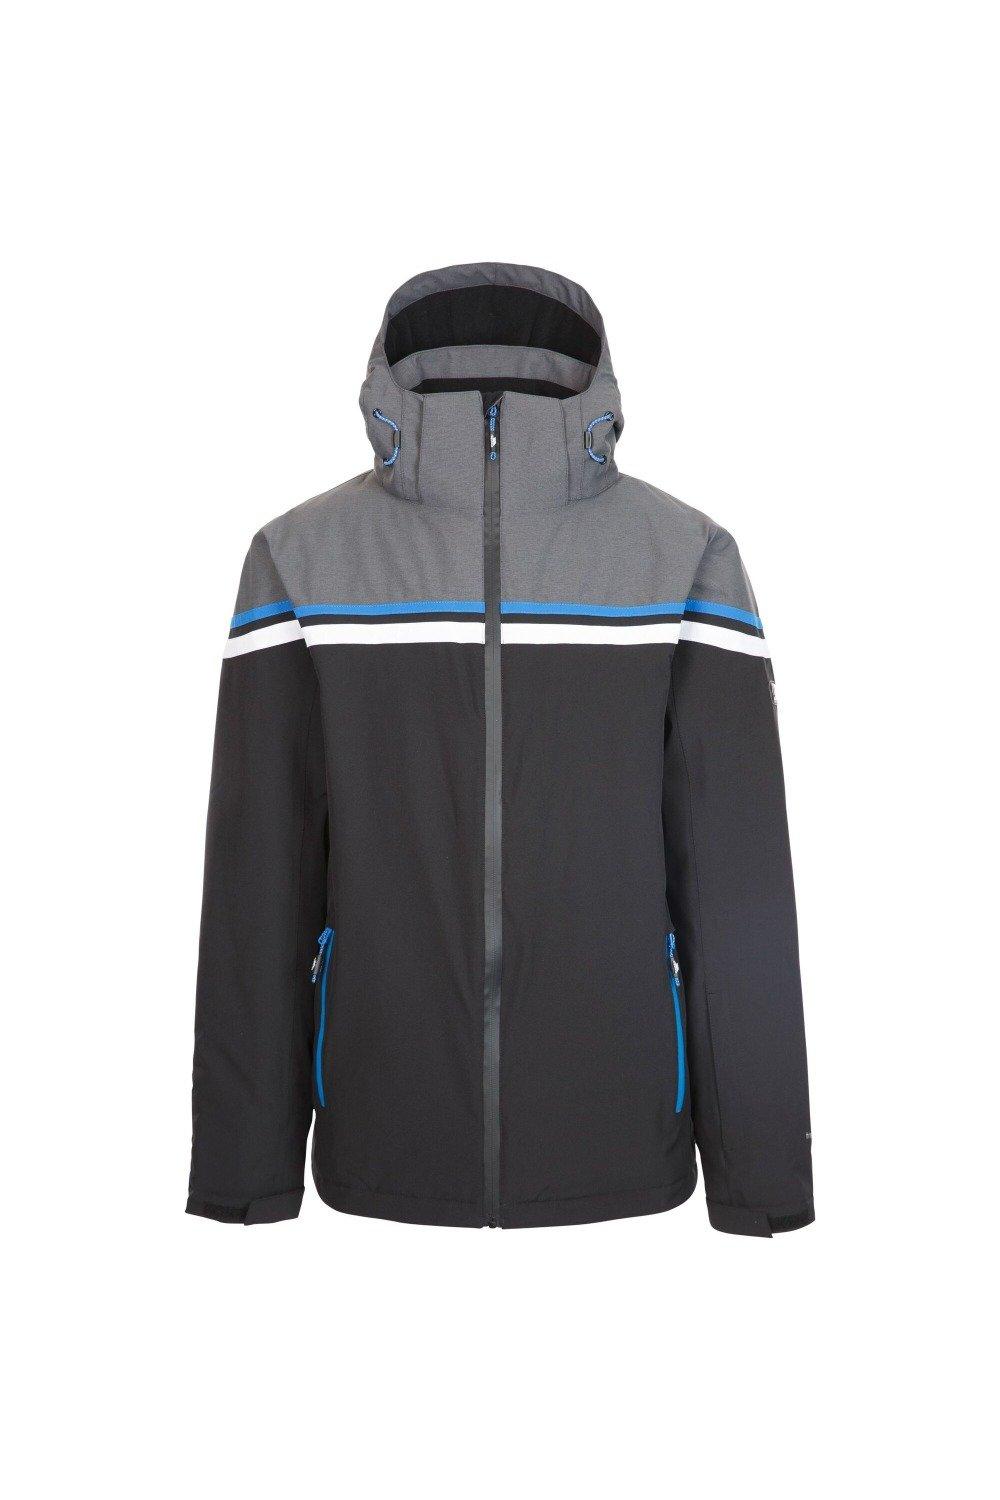 Лыжная куртка Dexy Trespass, черный мужская лыжная куртка bowie темно синяя trespass цвет azul